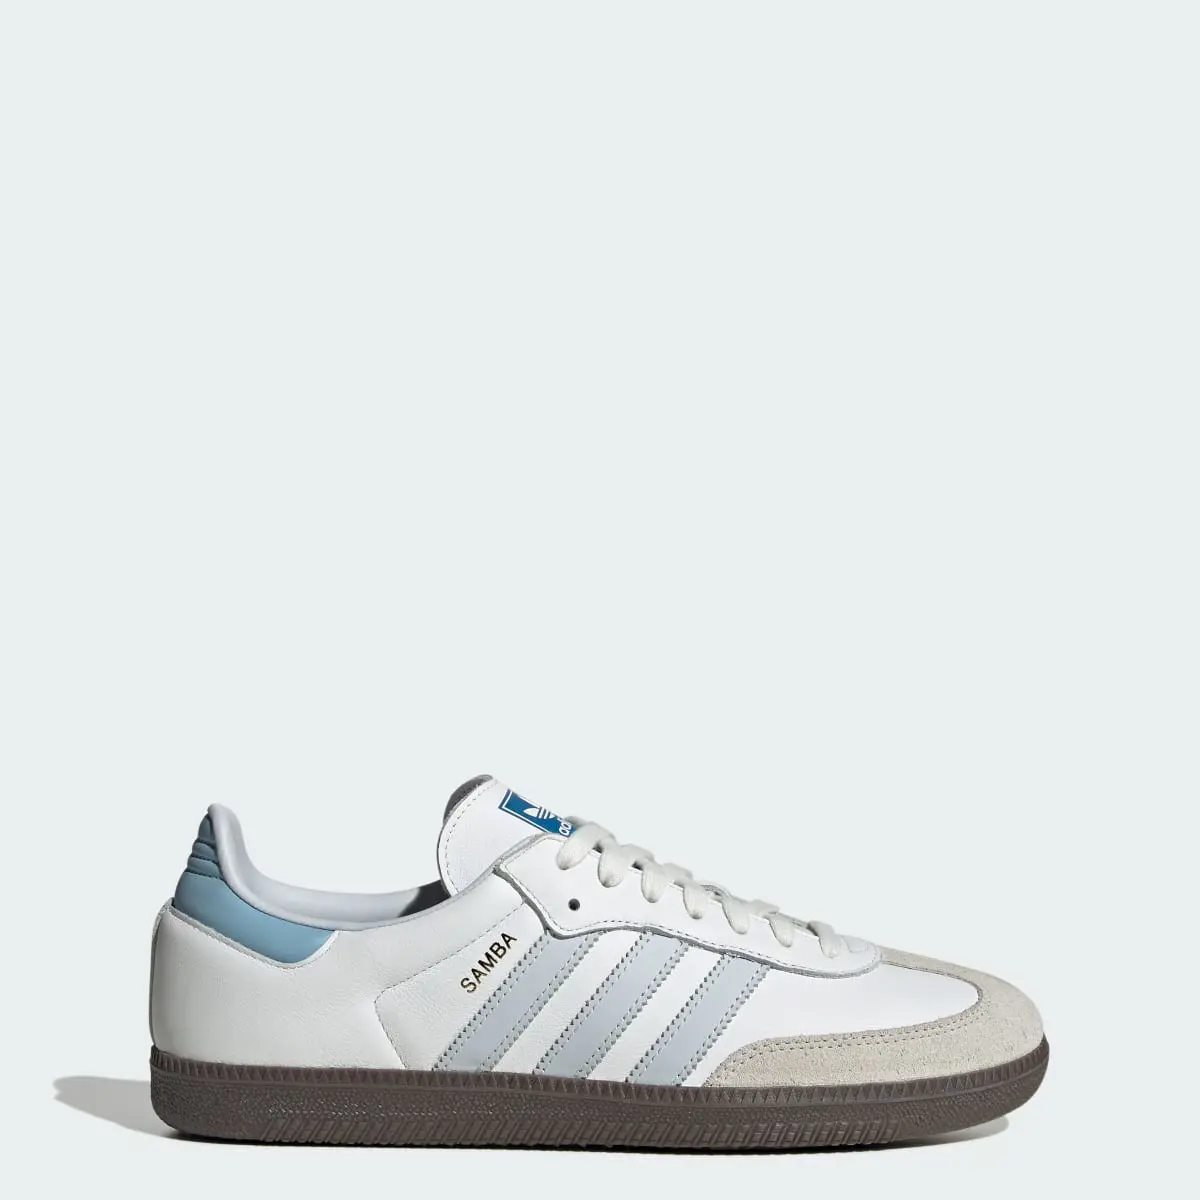 Adidas Samba OG Ayakkabı. 1